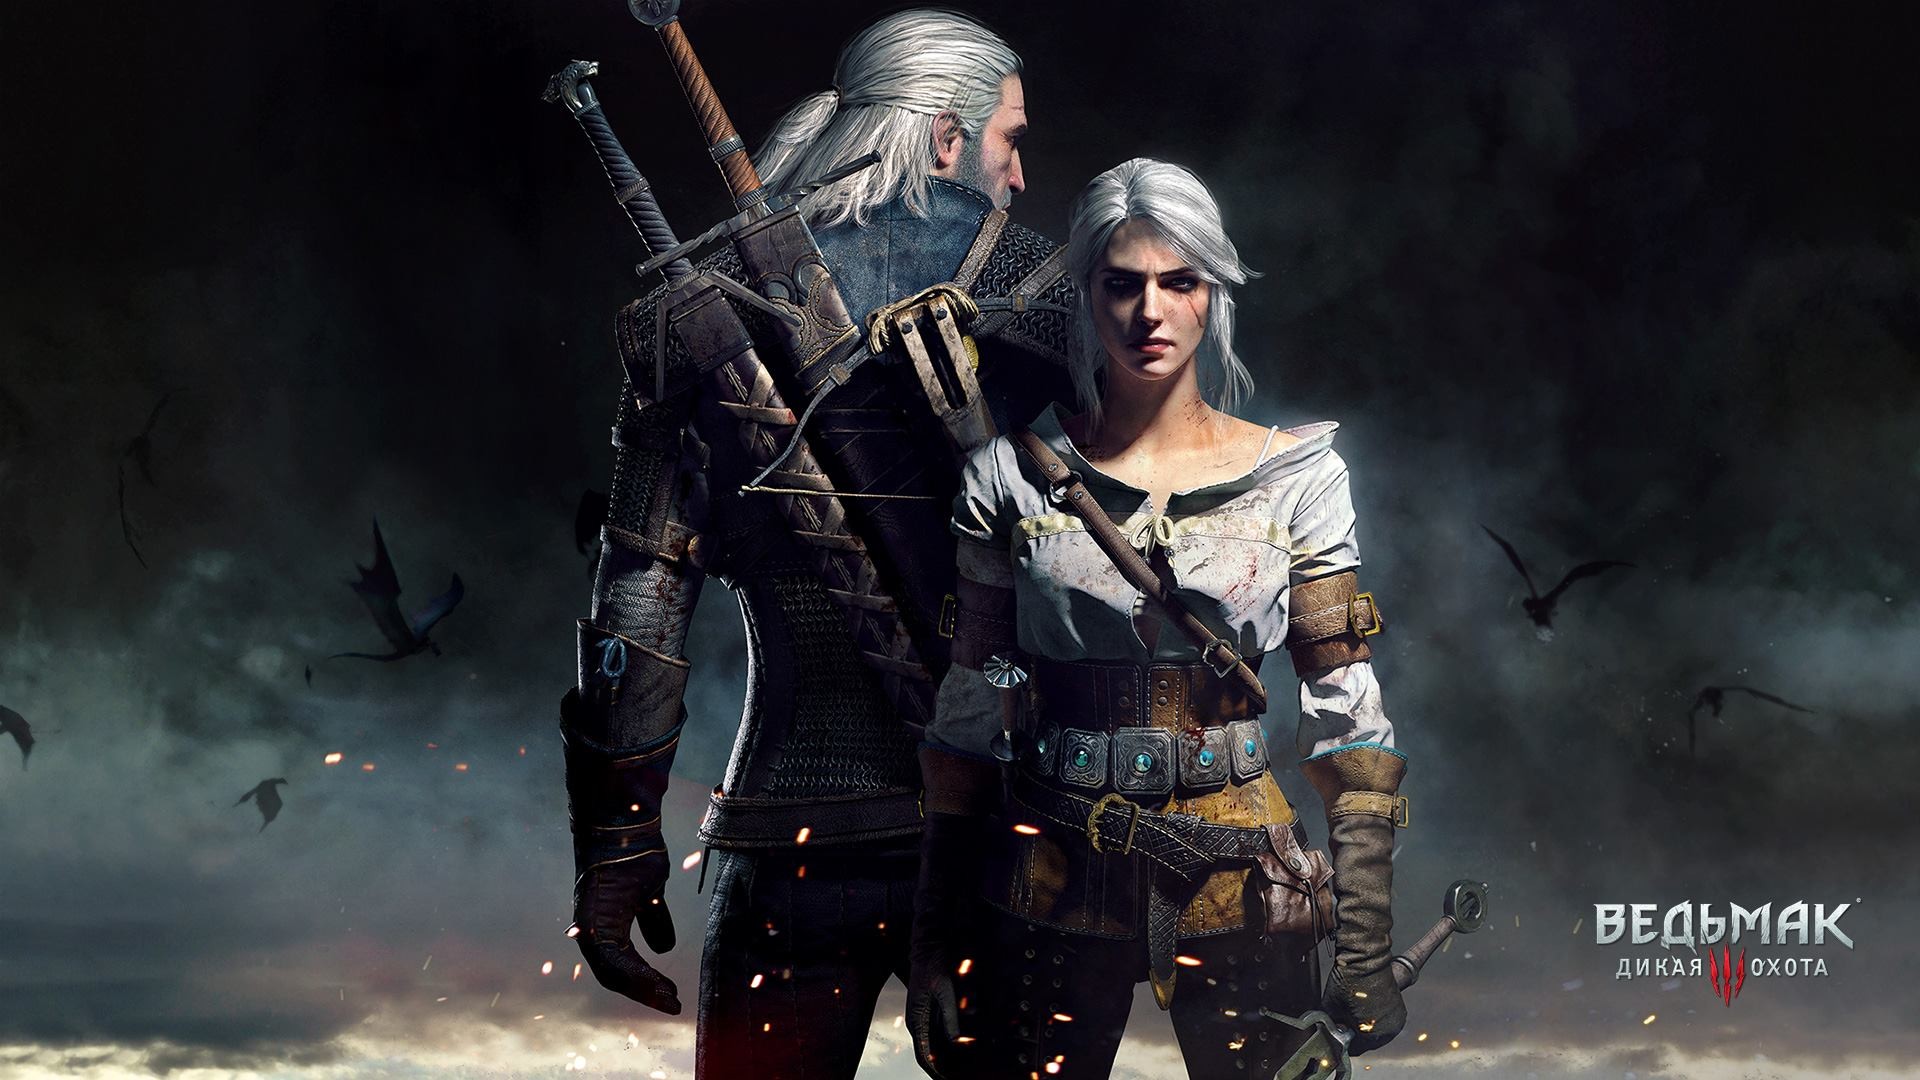 The Witcher 3: Wild Hunt, Video Games, Geralt Of Rivia, Cirilla Fiona Elen Riannon, Ciri Wallpaper